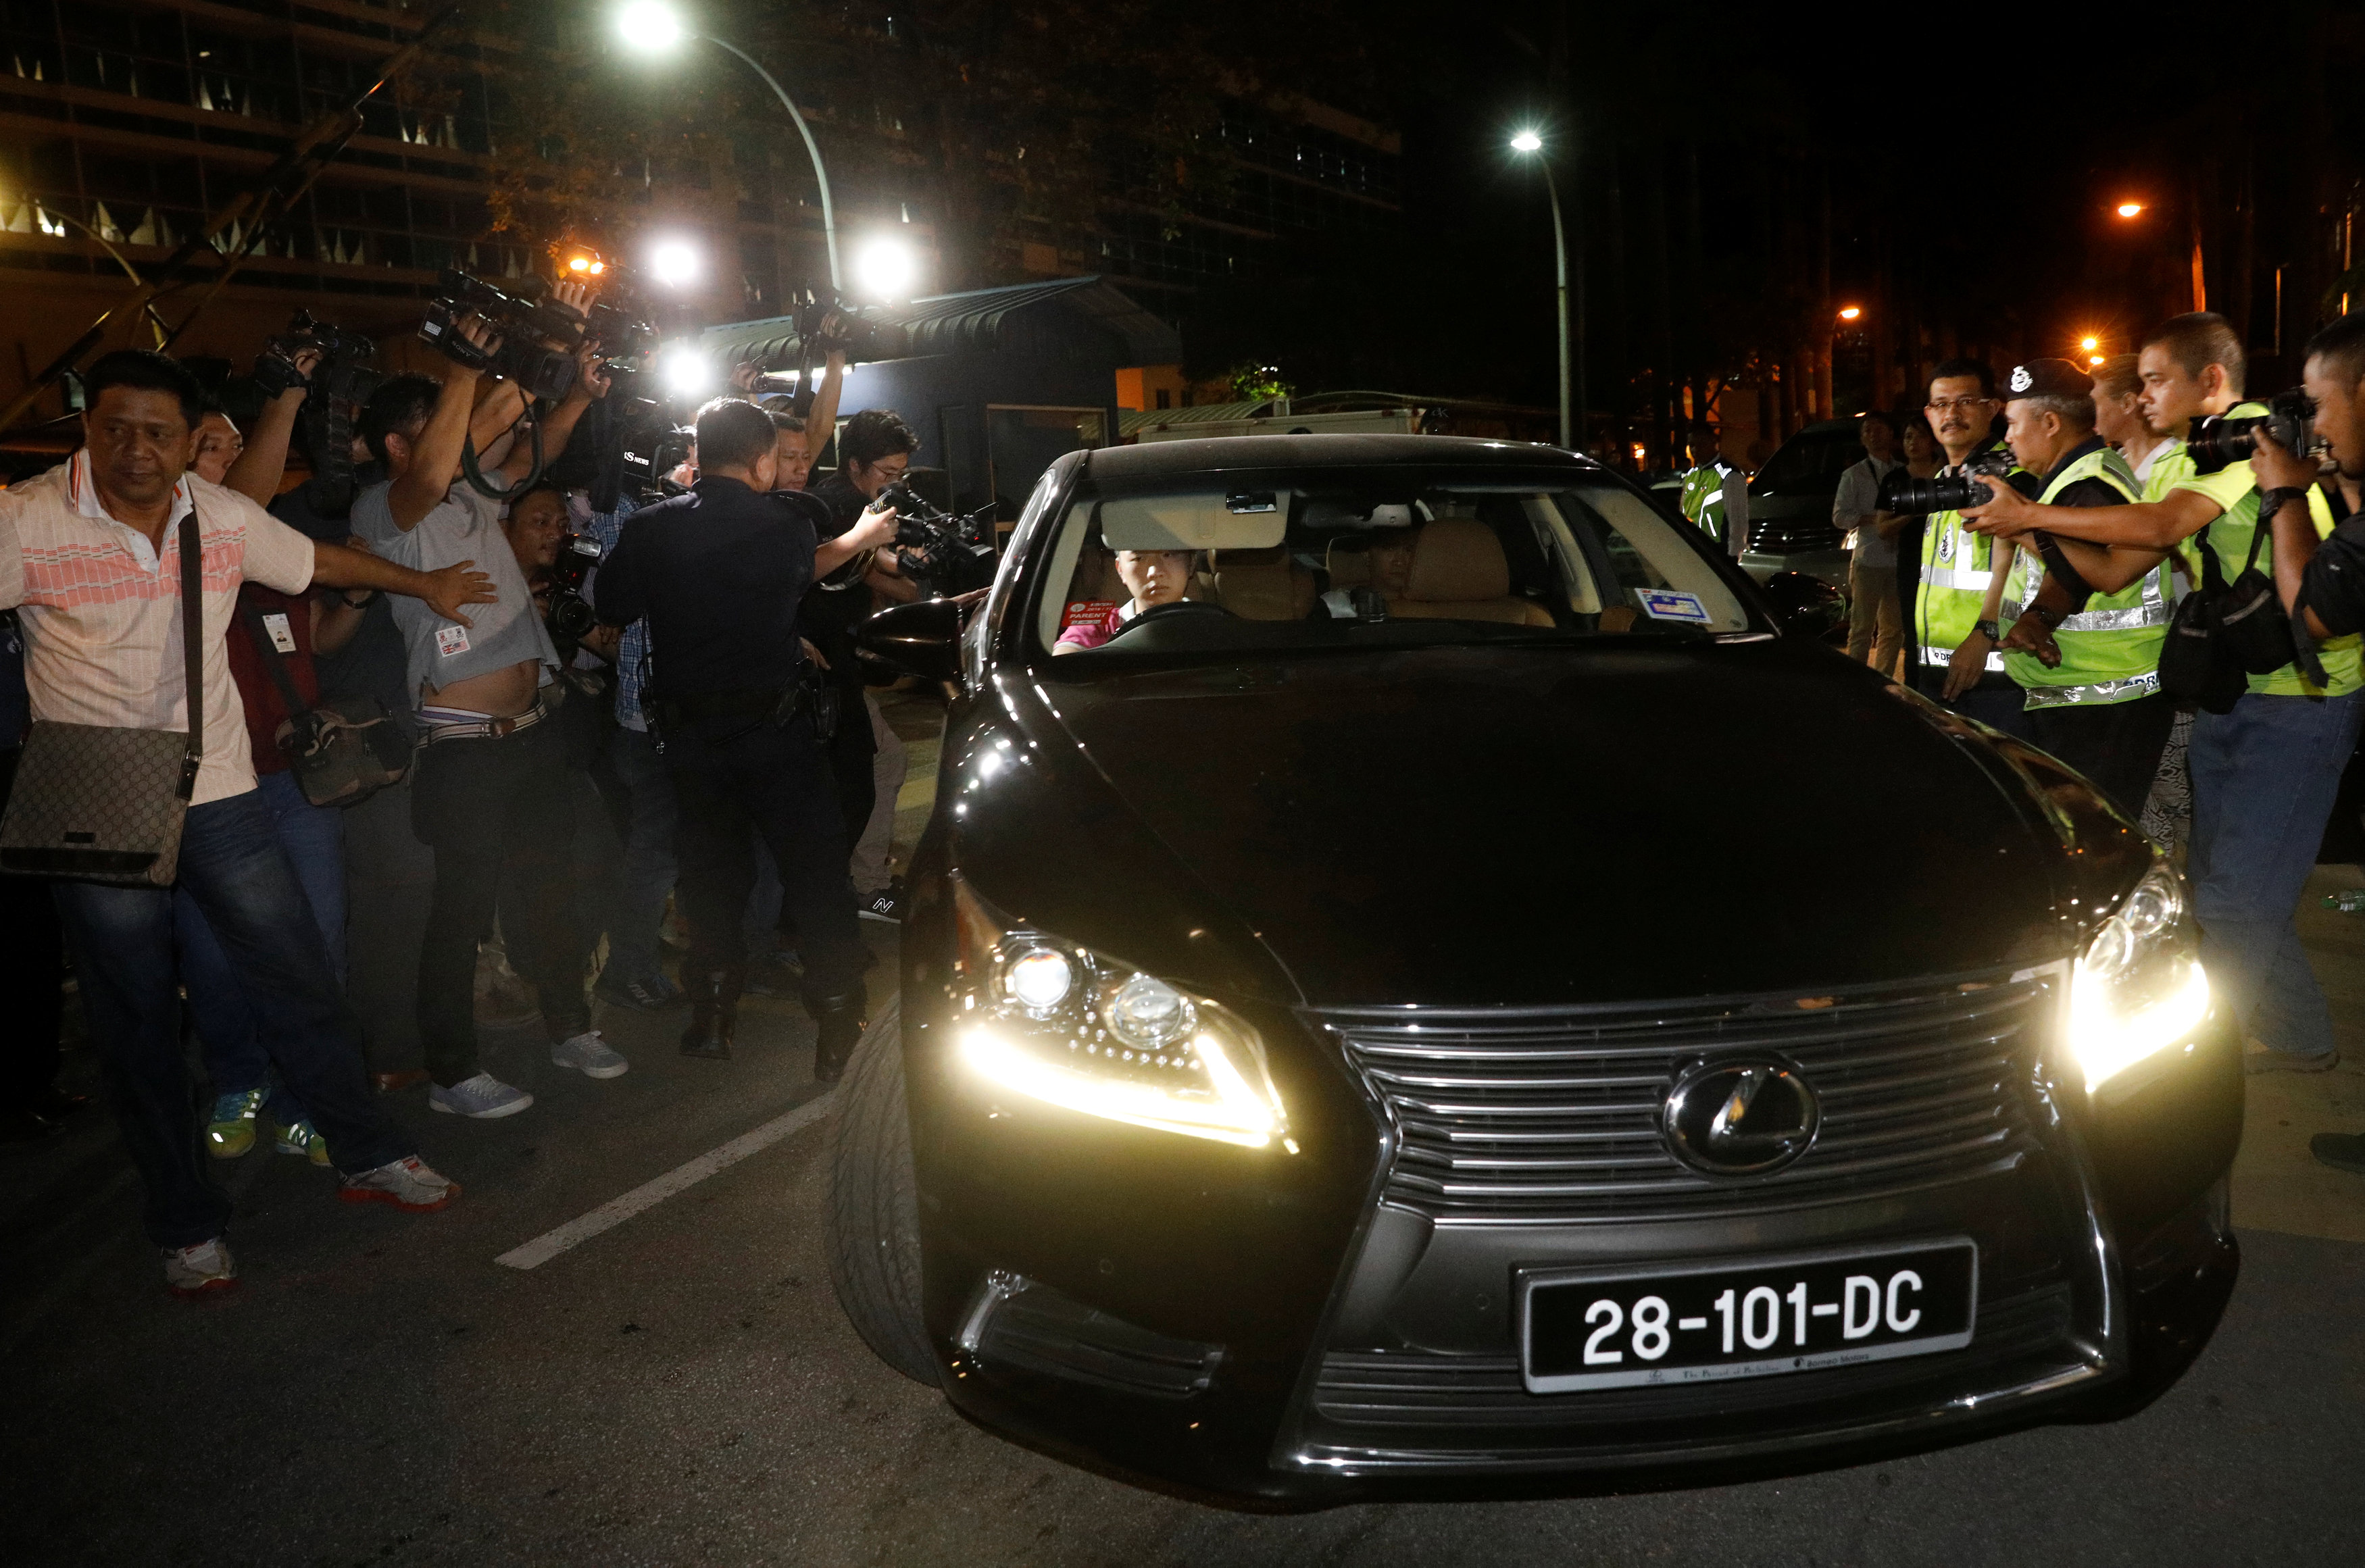 รถของเจ้าหน้าที่สถานทูตเกาหลีเหนือขณะเดินทางออกจากโรงพยาบาลกัวลาลัมเปอร์ สถานที่ชันสูตรศพ / REUTERS/Edgar Su